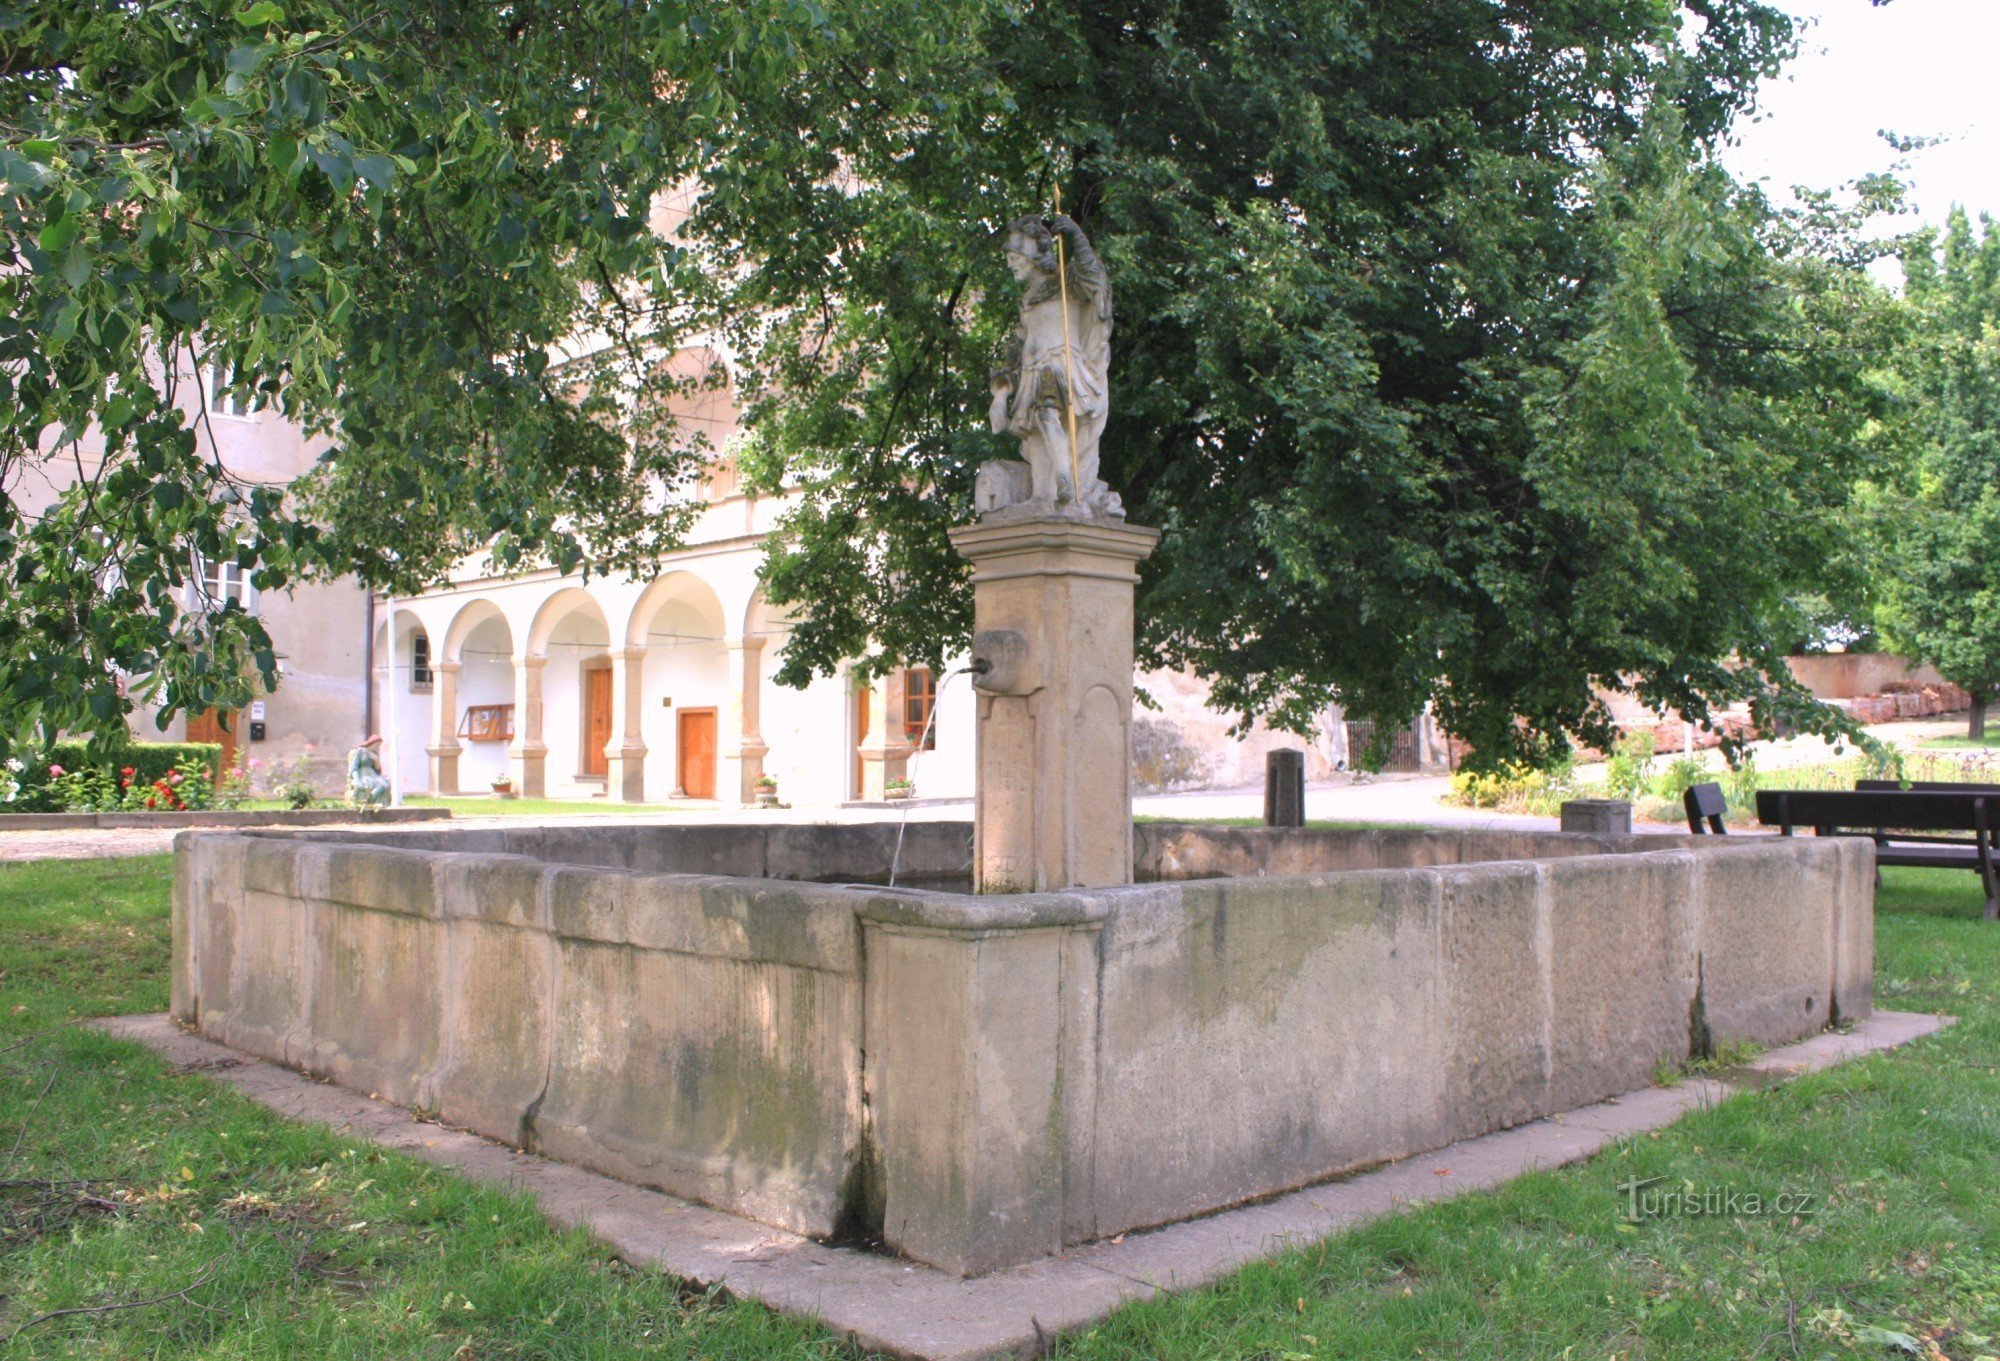 Bohutice - fontana del castello